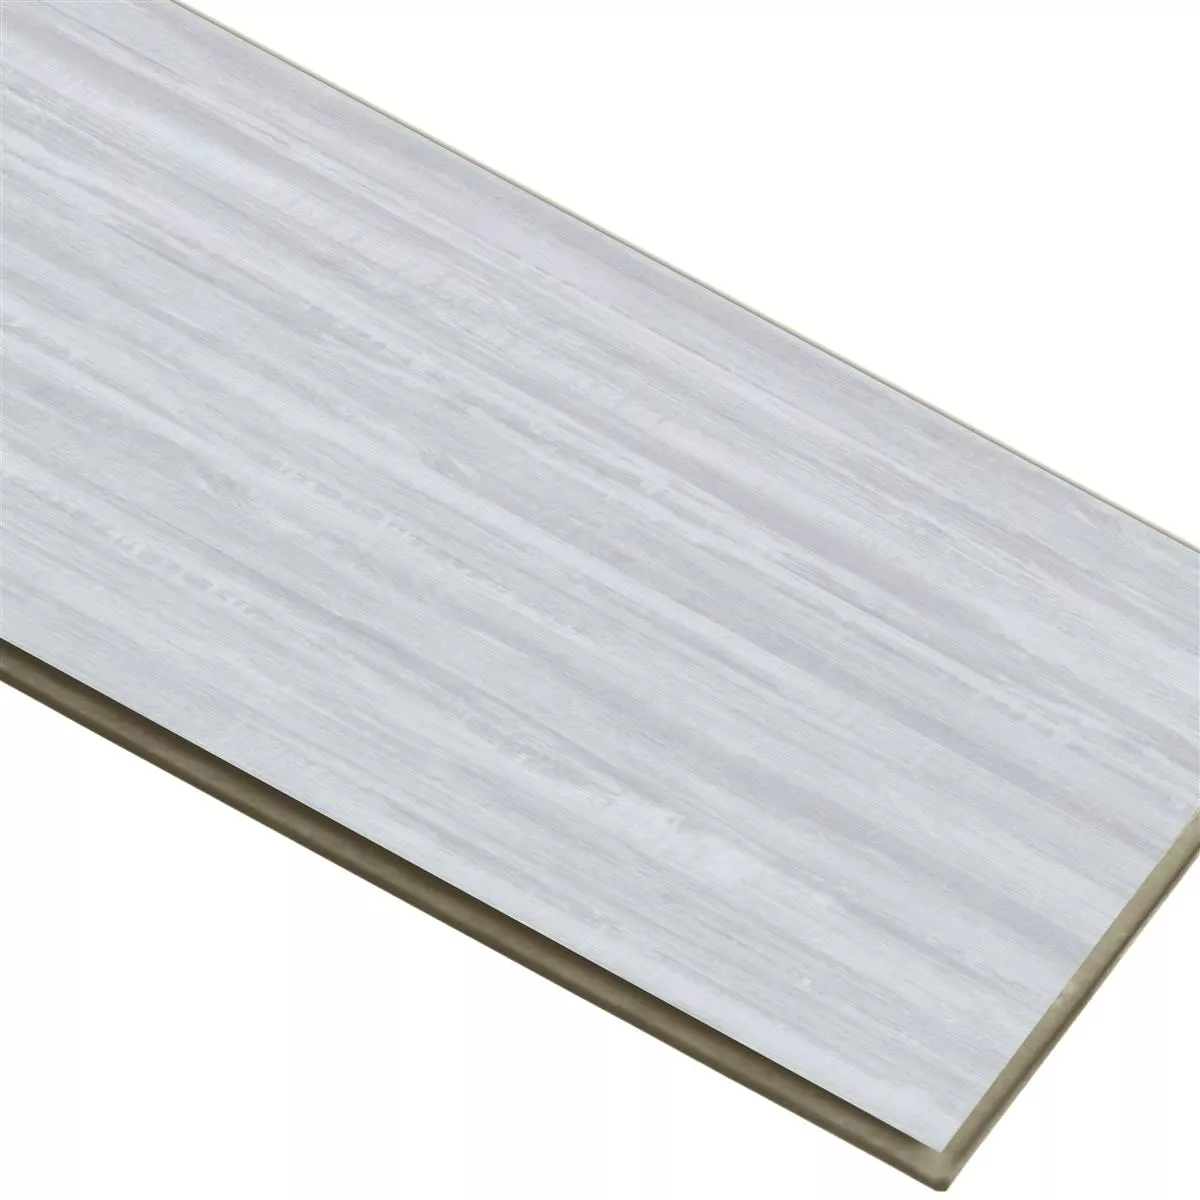 Vinylboden Klicksystem Snowwood Weiss 17,2x121cm